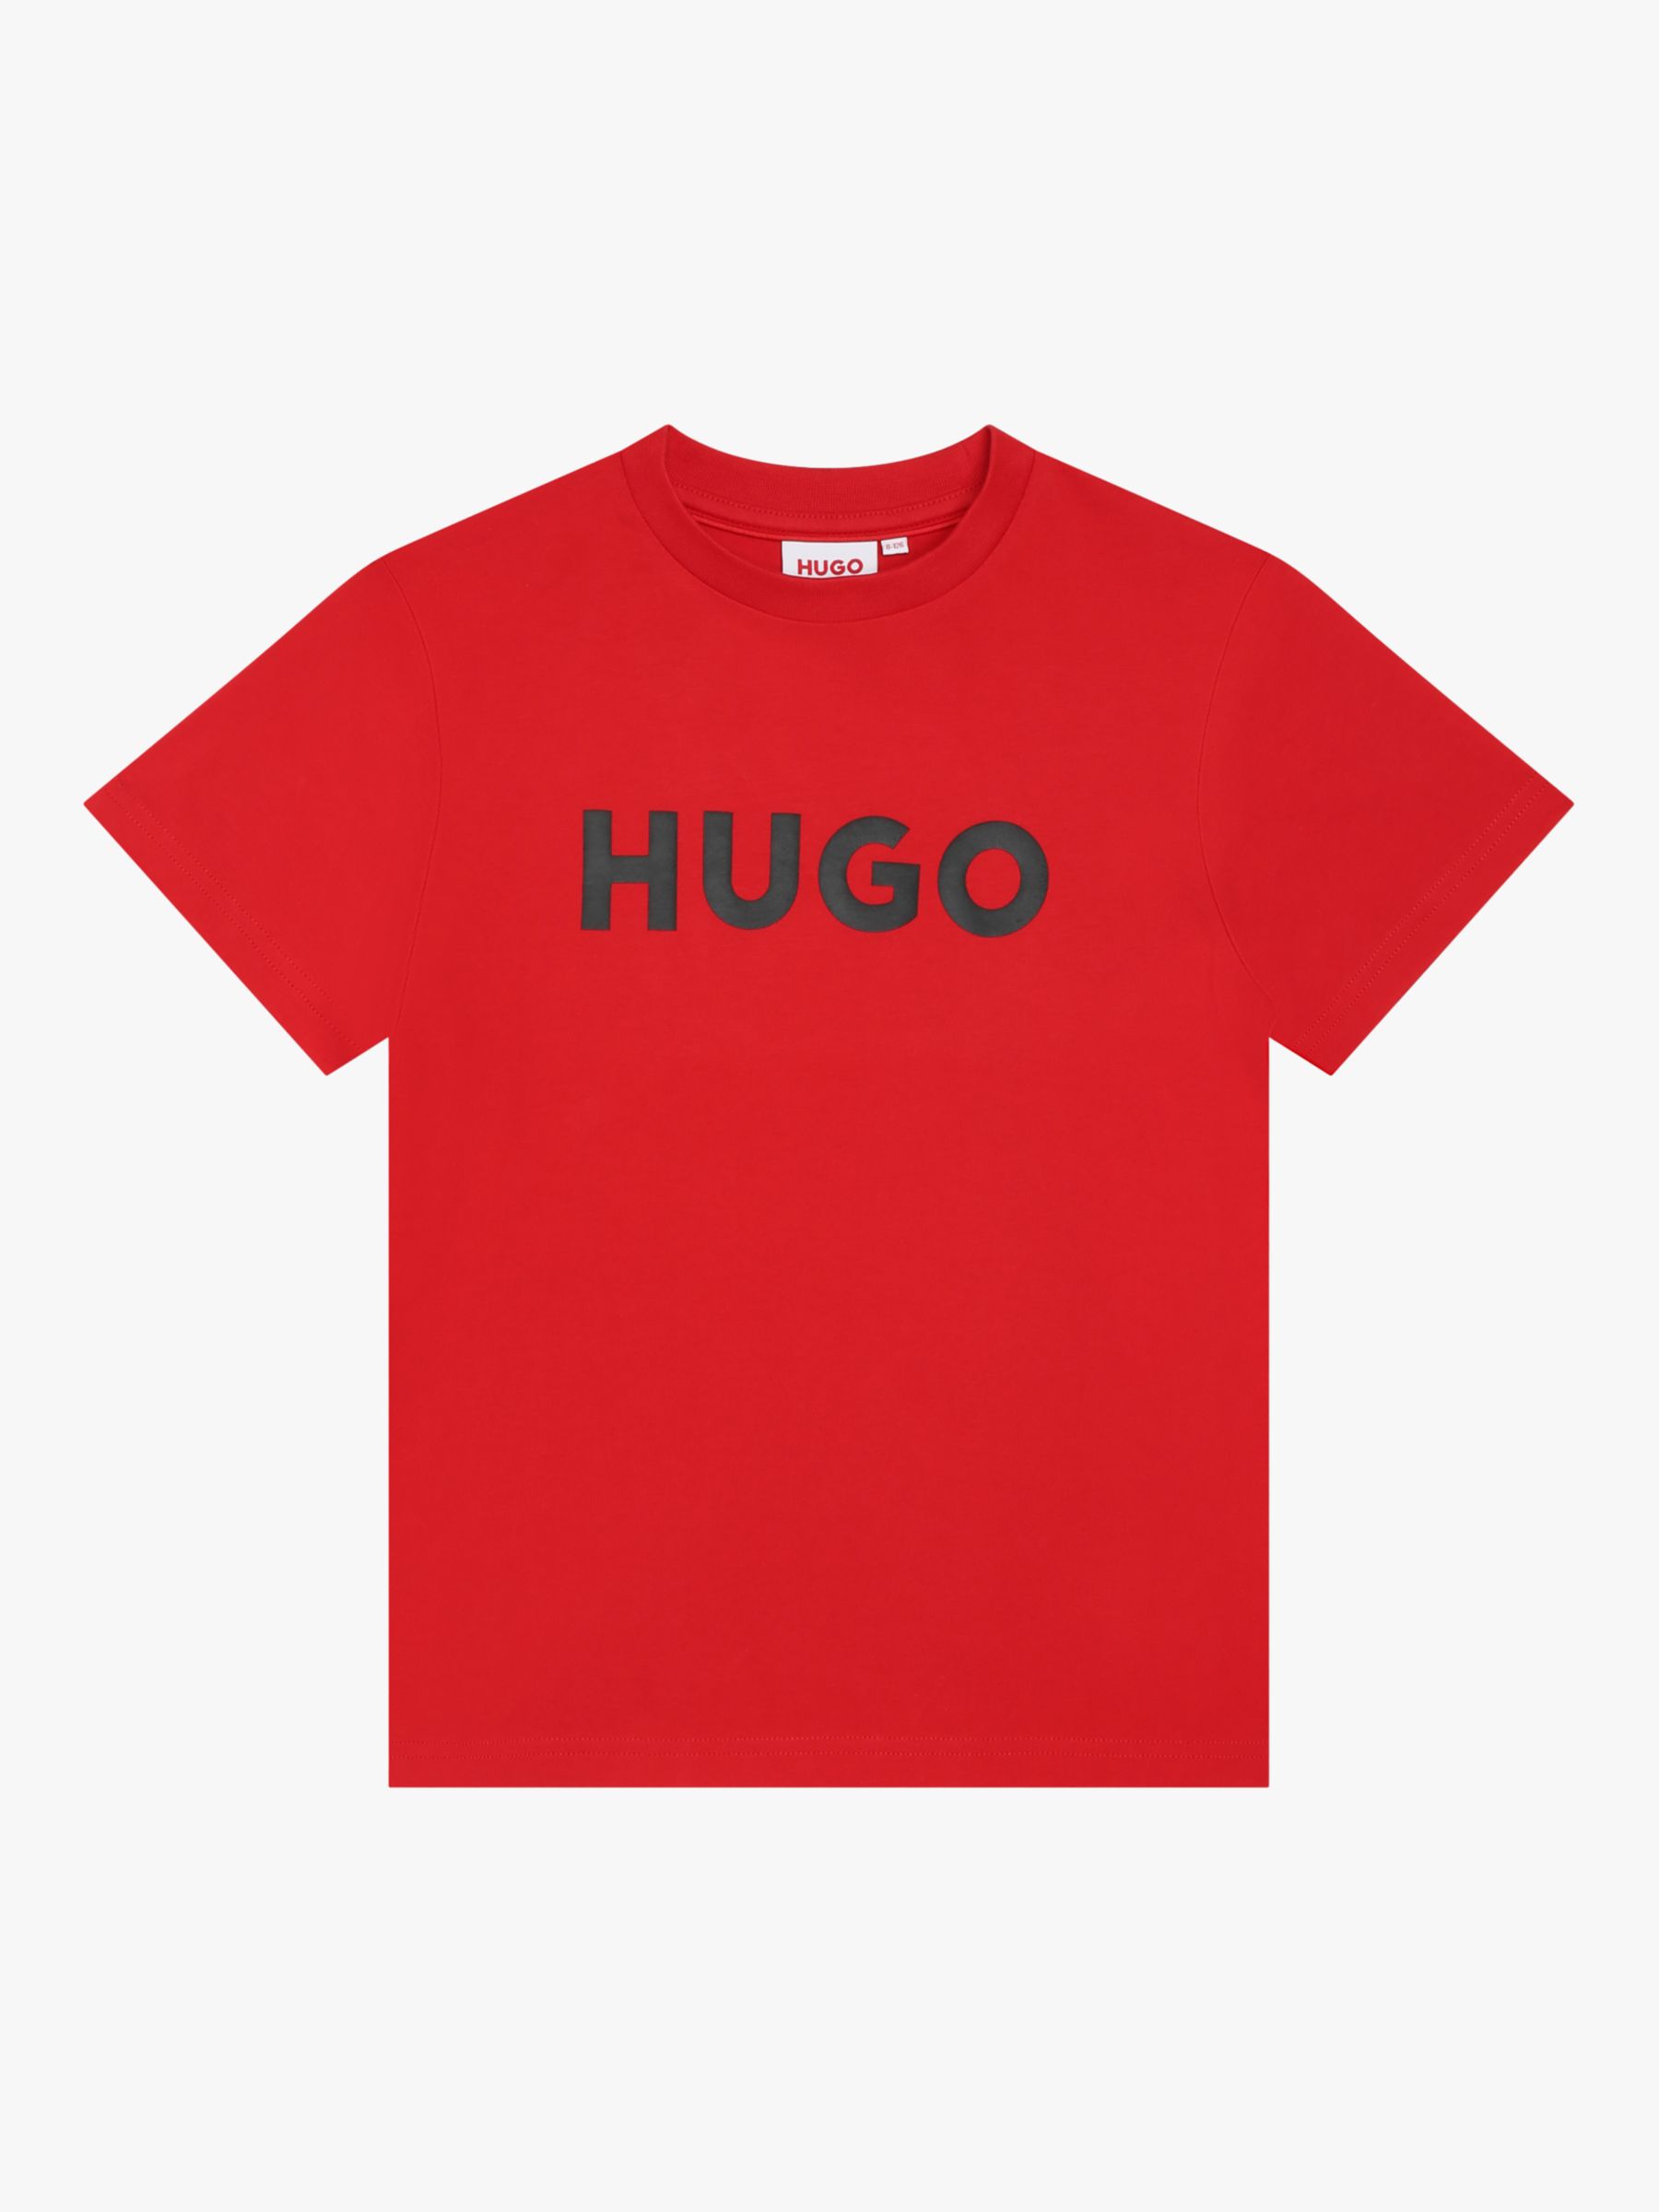 HUGO Kids' Large Logo Print T-Shirt, Red/Black, 4 years